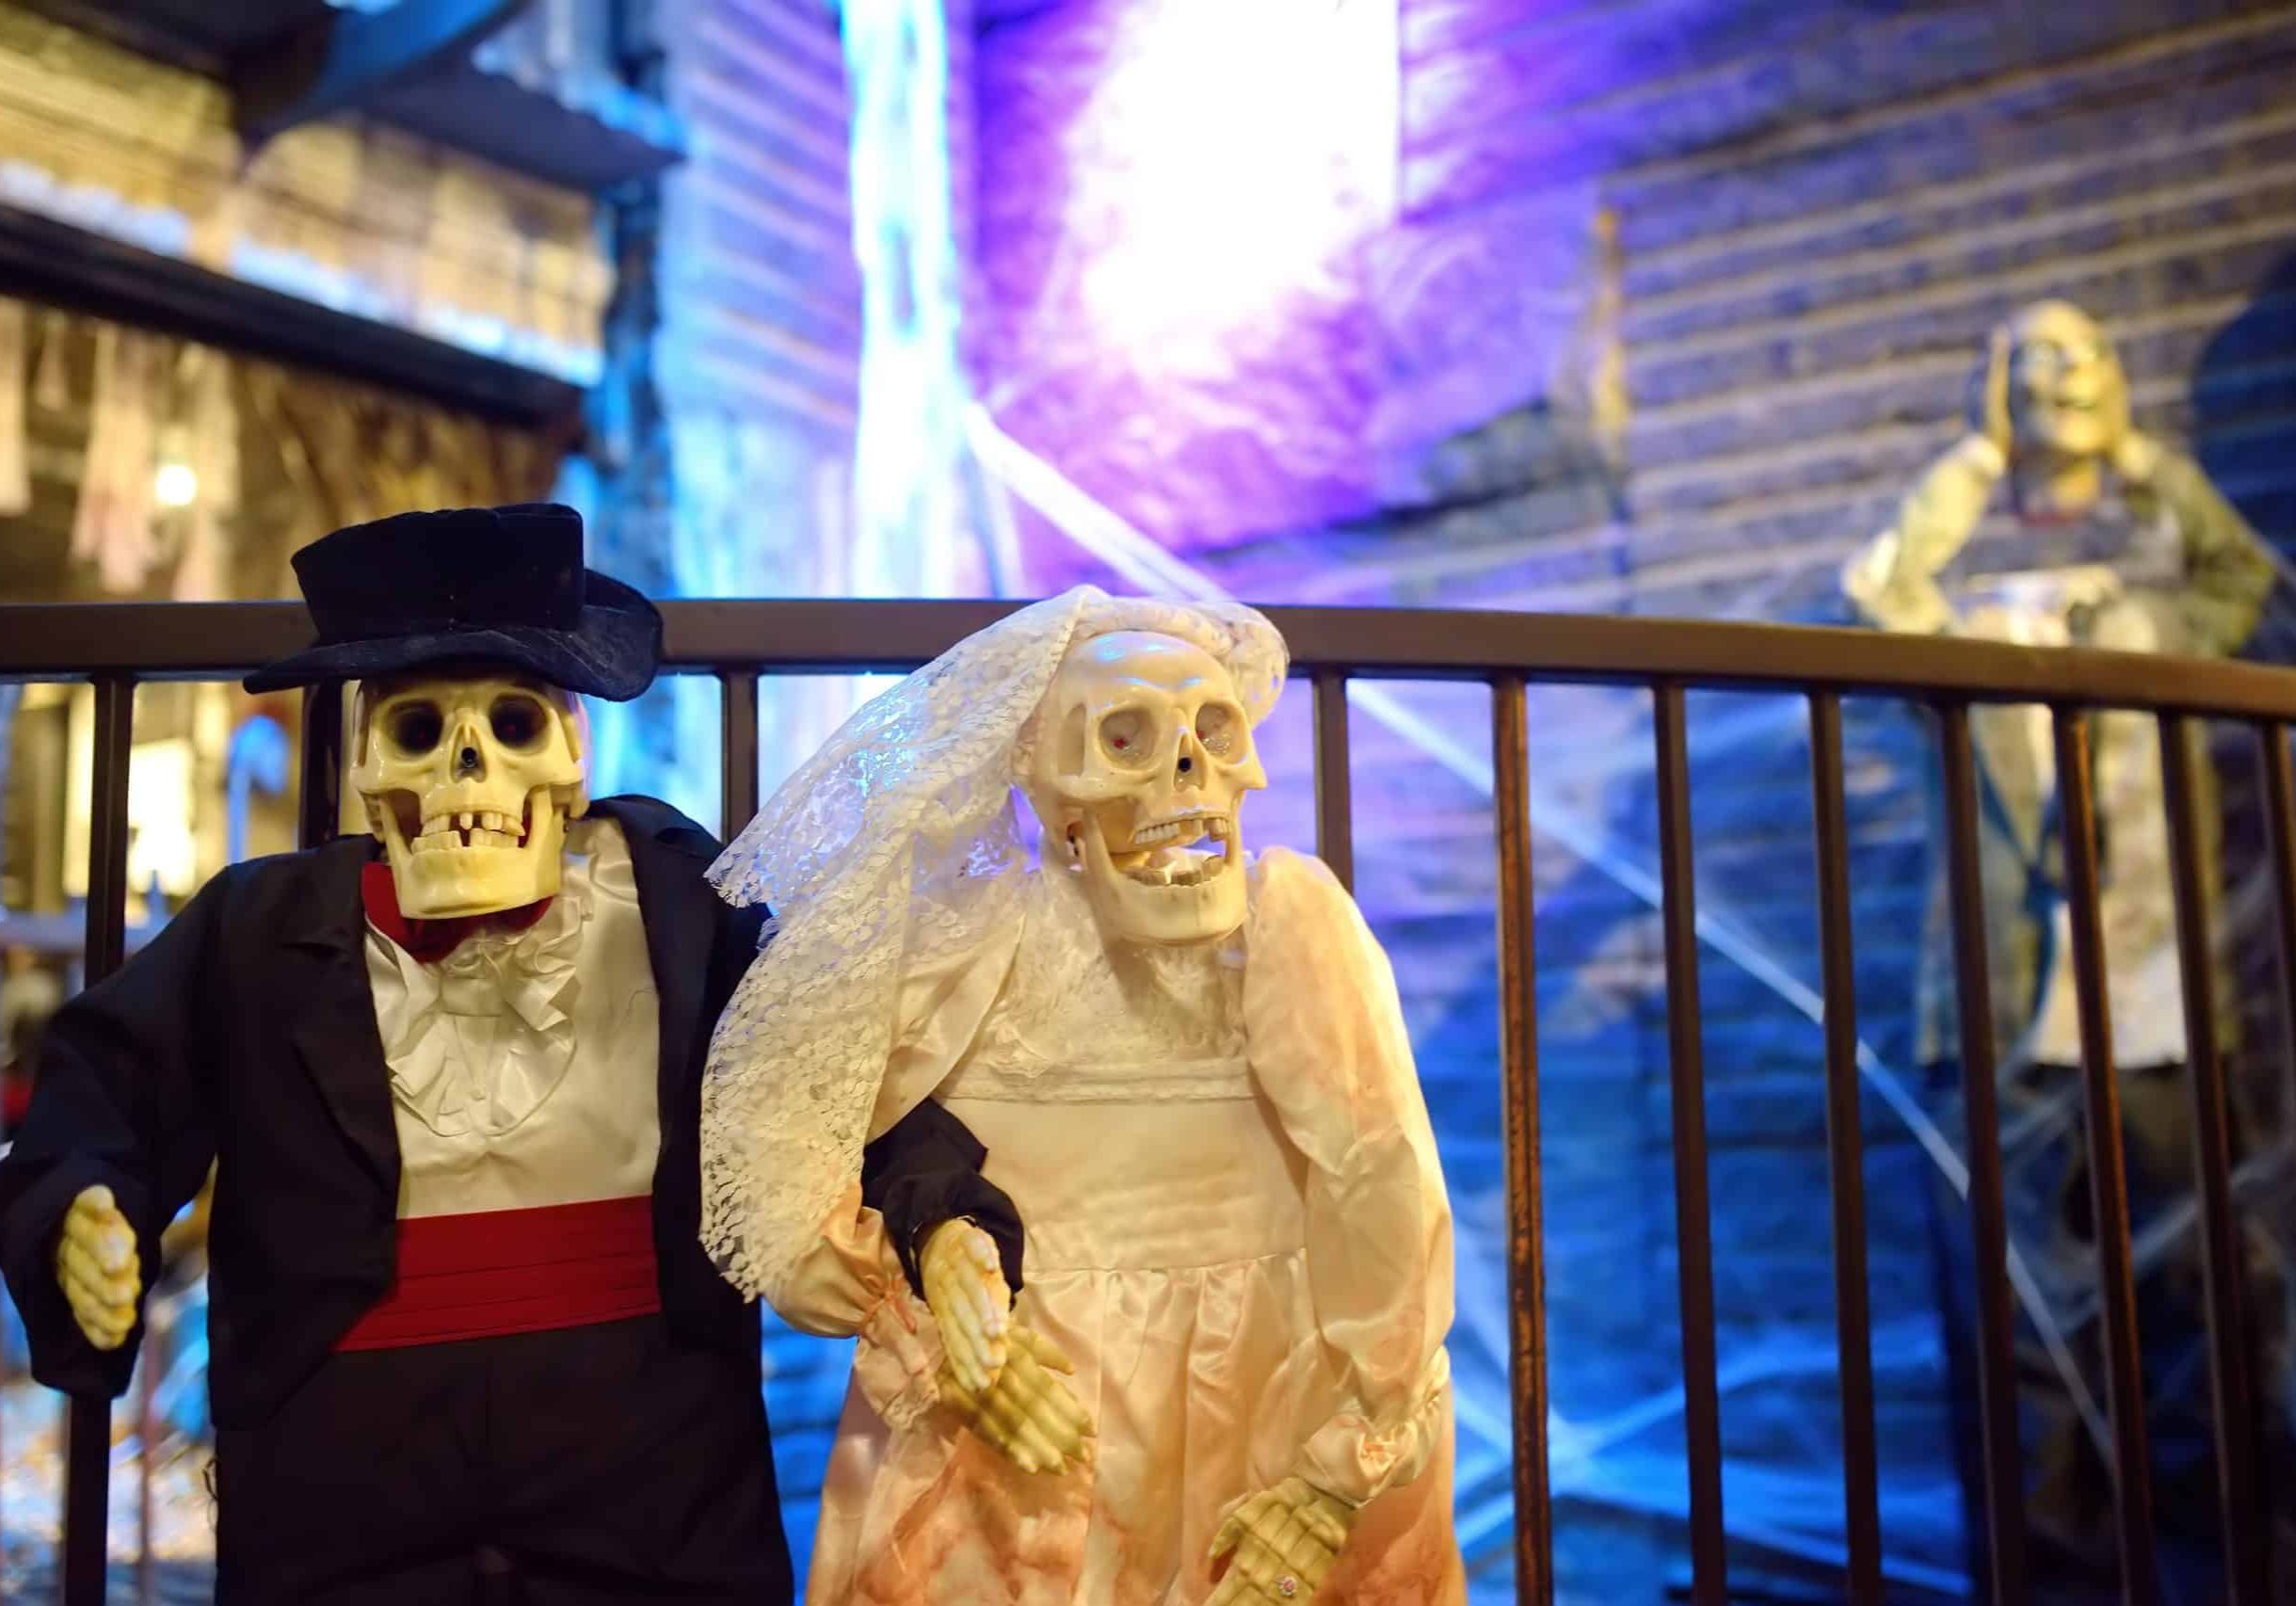 wedding-pair-of-scary-skeletons-in-chelsea-market-2022-11-11-19-17-24-utc